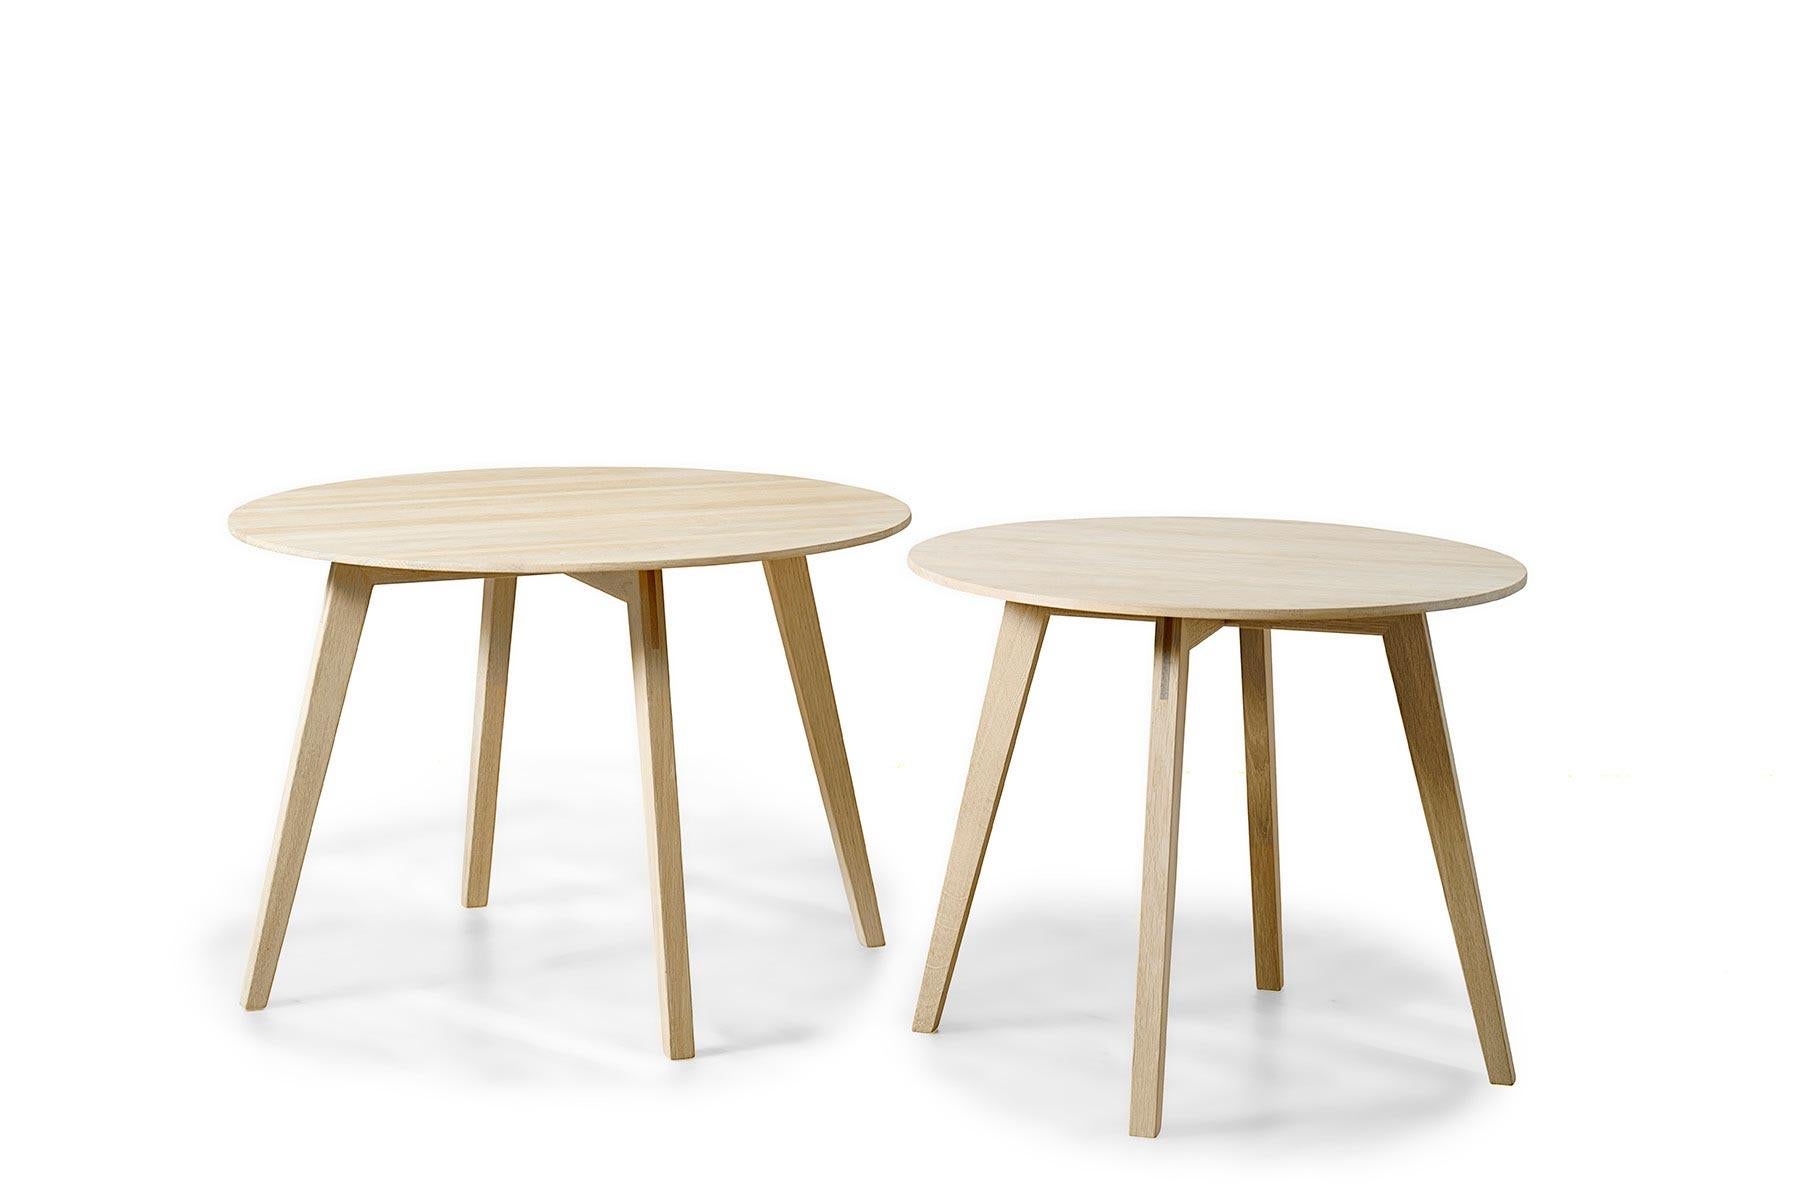 Conçue par Blum et Balle pour GETAMA en 2012, cette table d'appoint connue sous le nom de cercle présente un savoir-faire inégalé dans une silhouette minimaliste. Menuiserie impeccable partout. Cette pièce est fabriquée à la main dans l'usine de